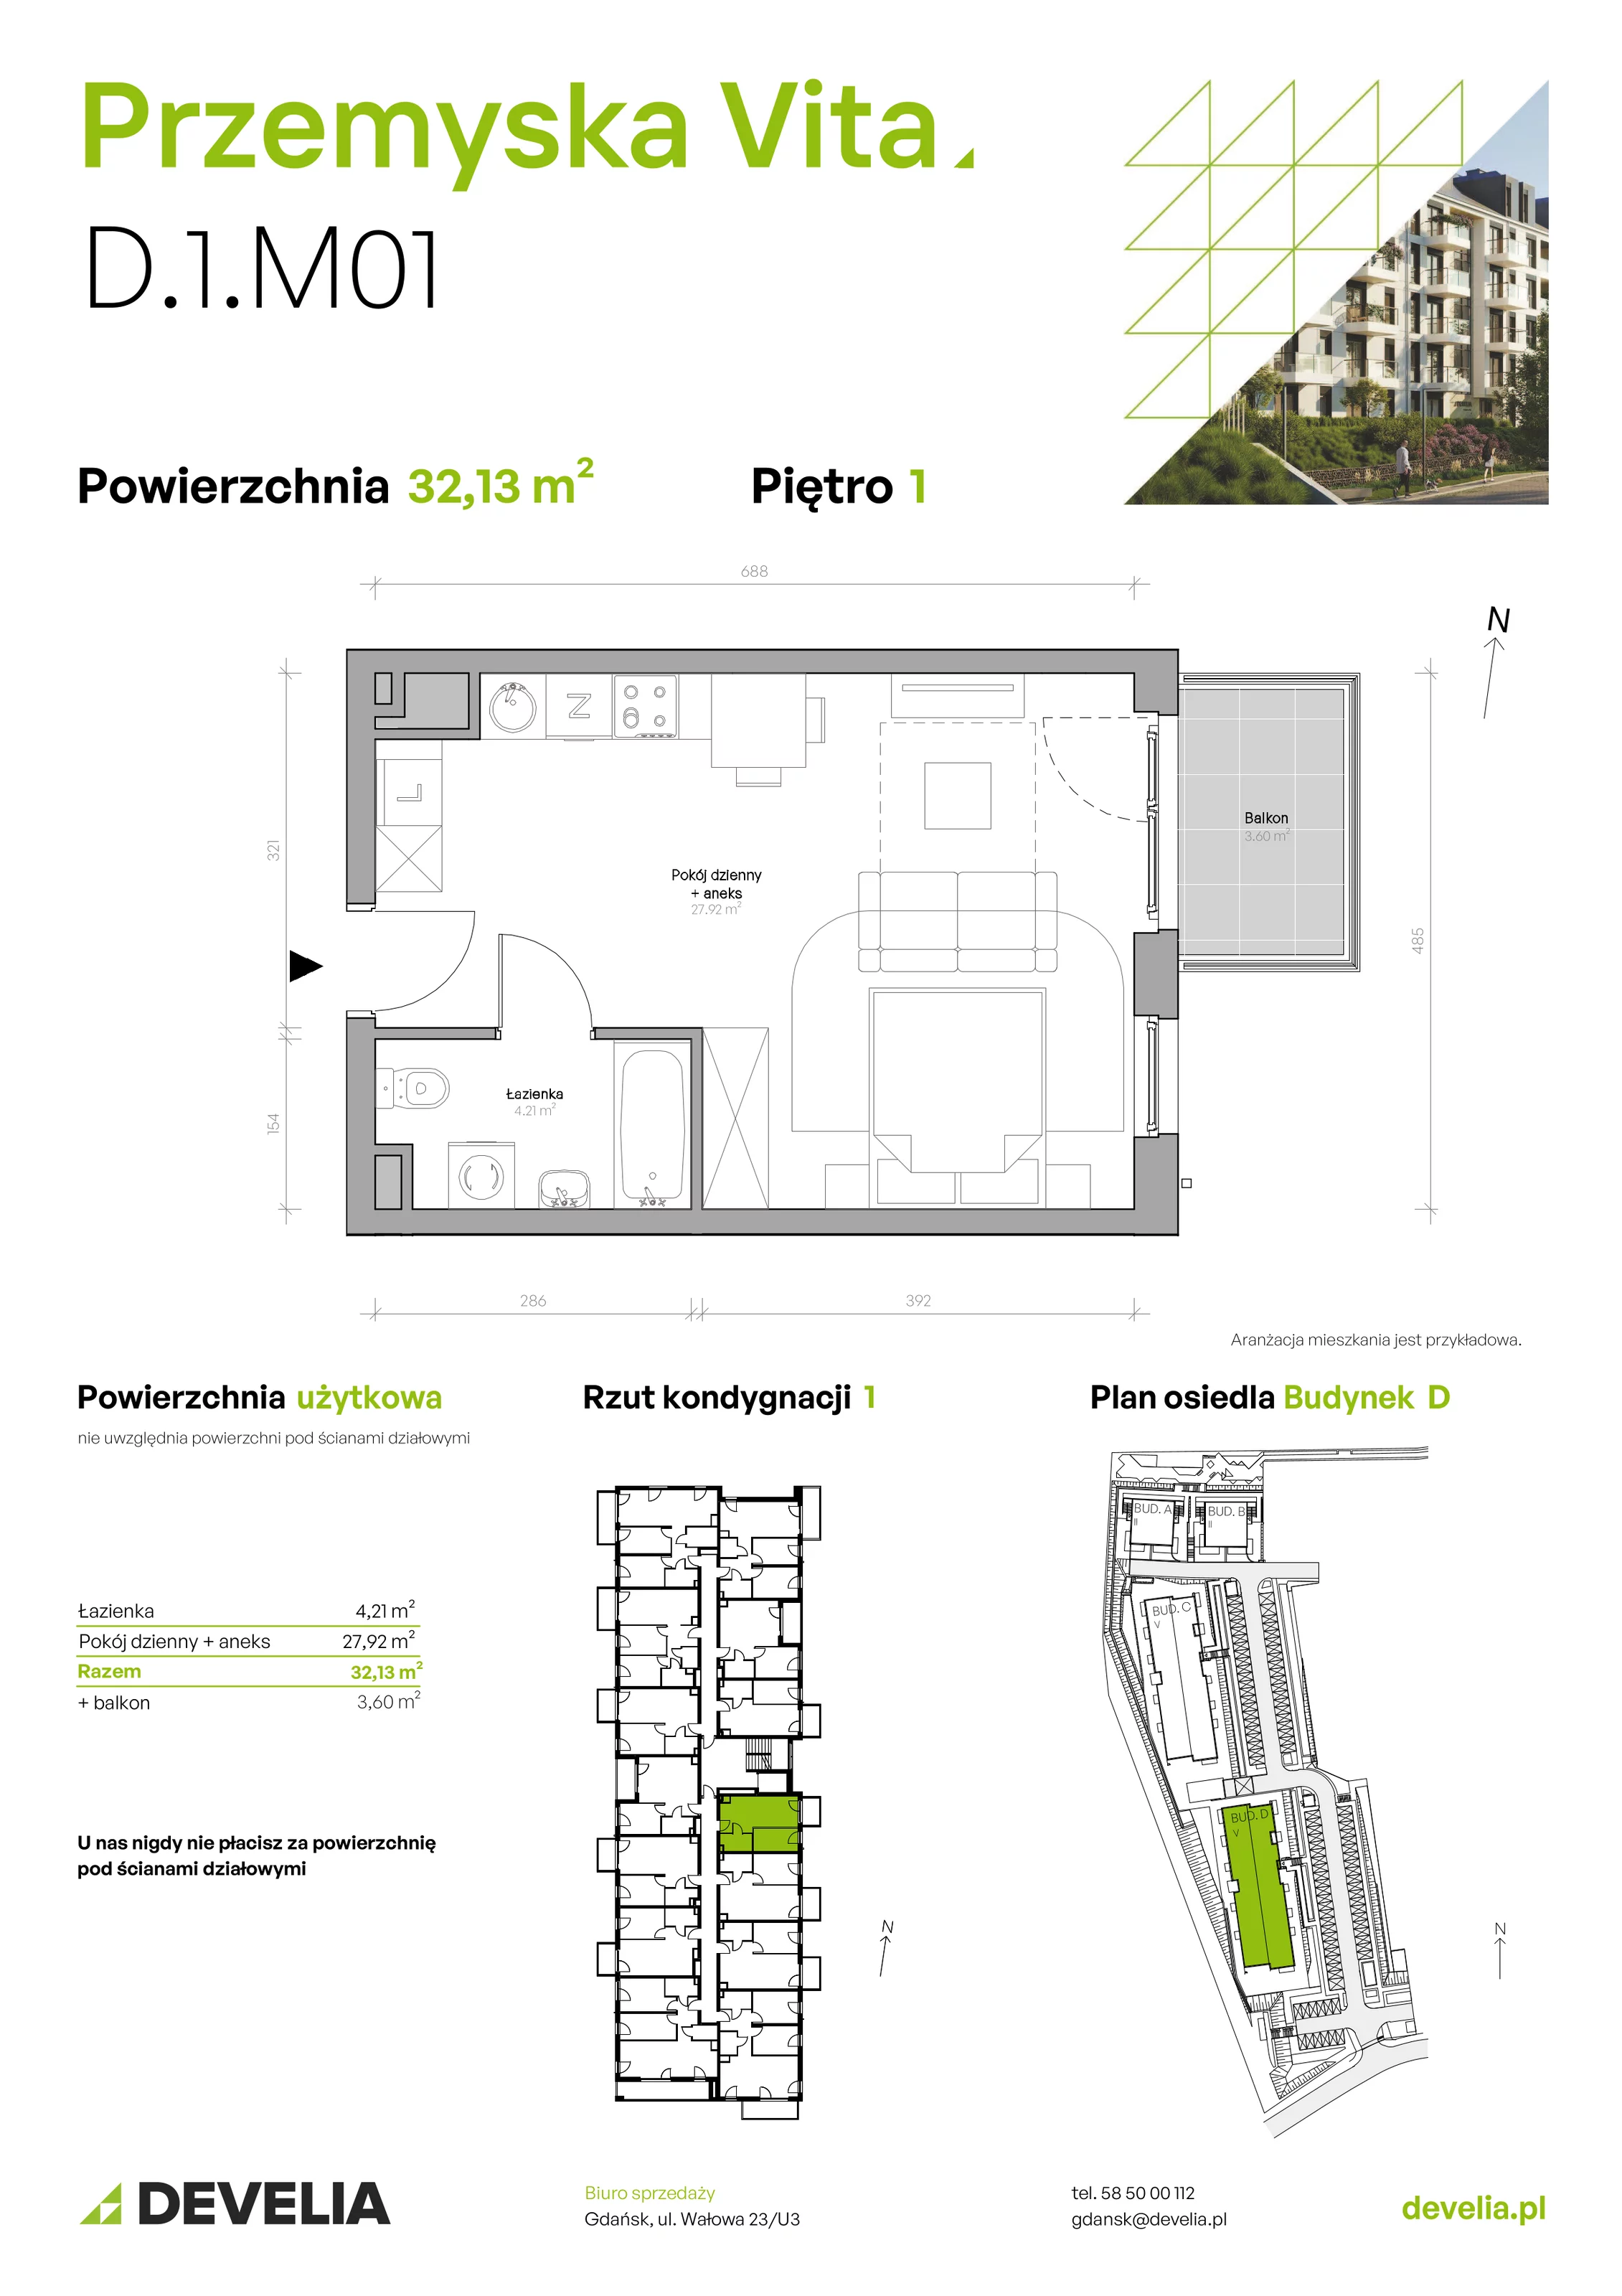 Mieszkanie 32,13 m², piętro 1, oferta nr D.1.M01, Przemyska Vita, Gdańsk, Ujeścisko-Łostowice, Ujeścisko, ul. Przemyska 37